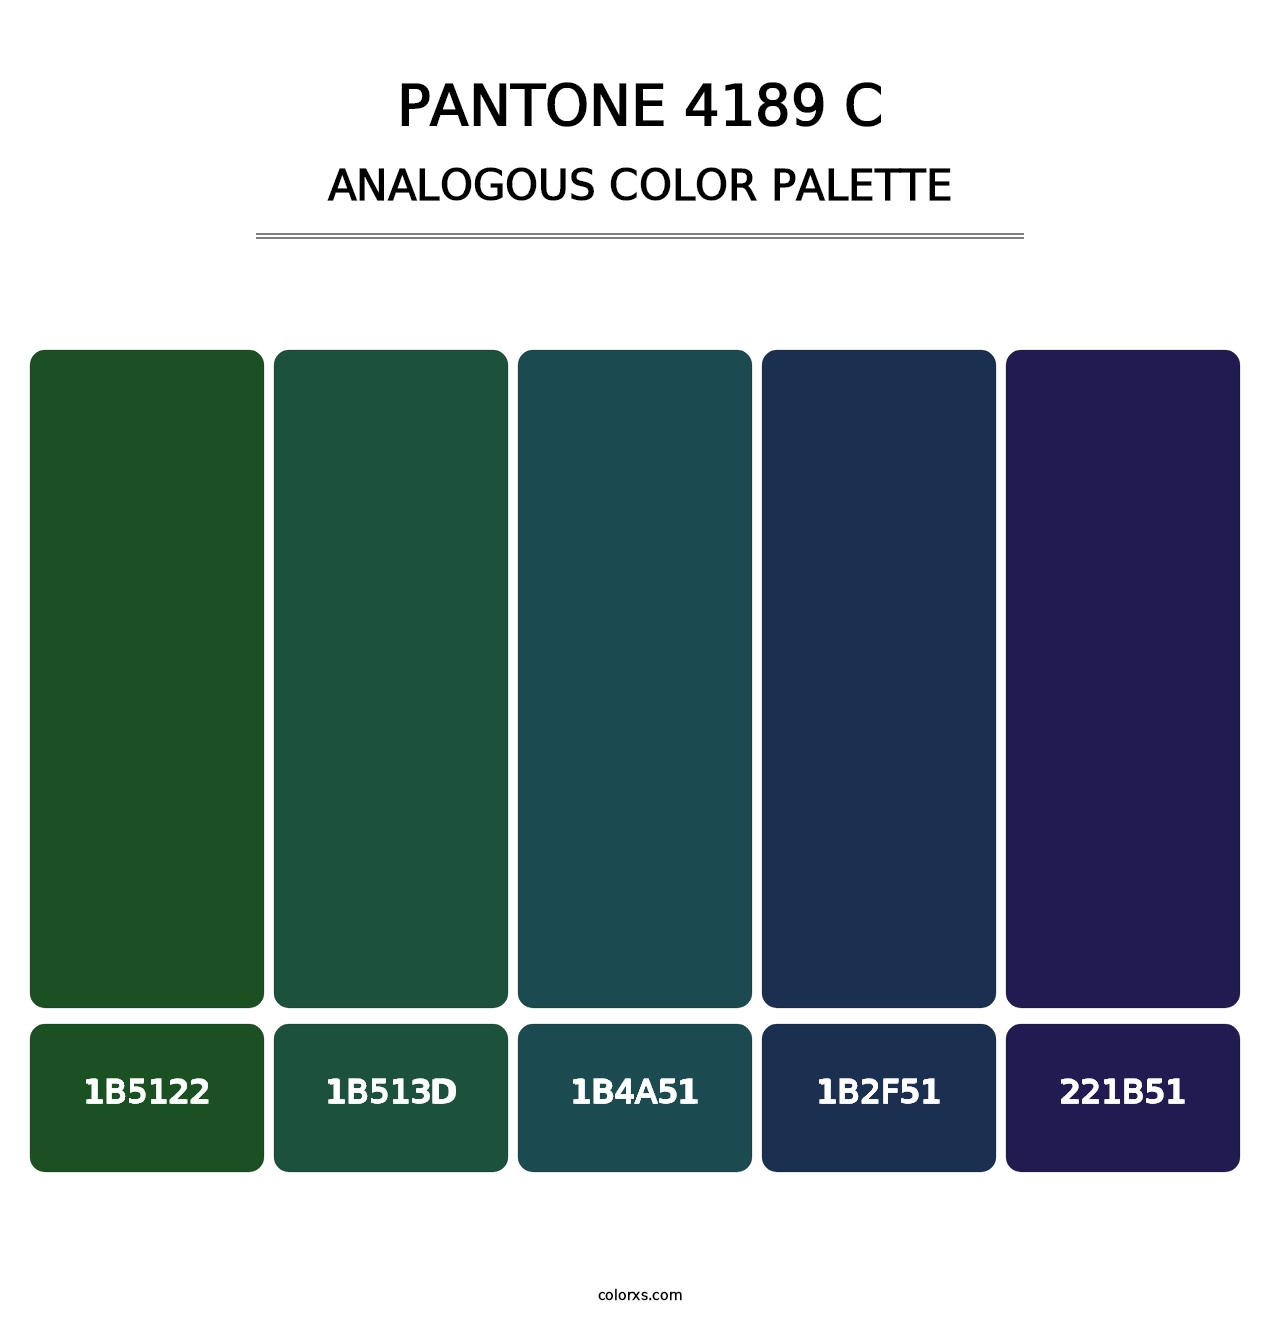 PANTONE 4189 C - Analogous Color Palette